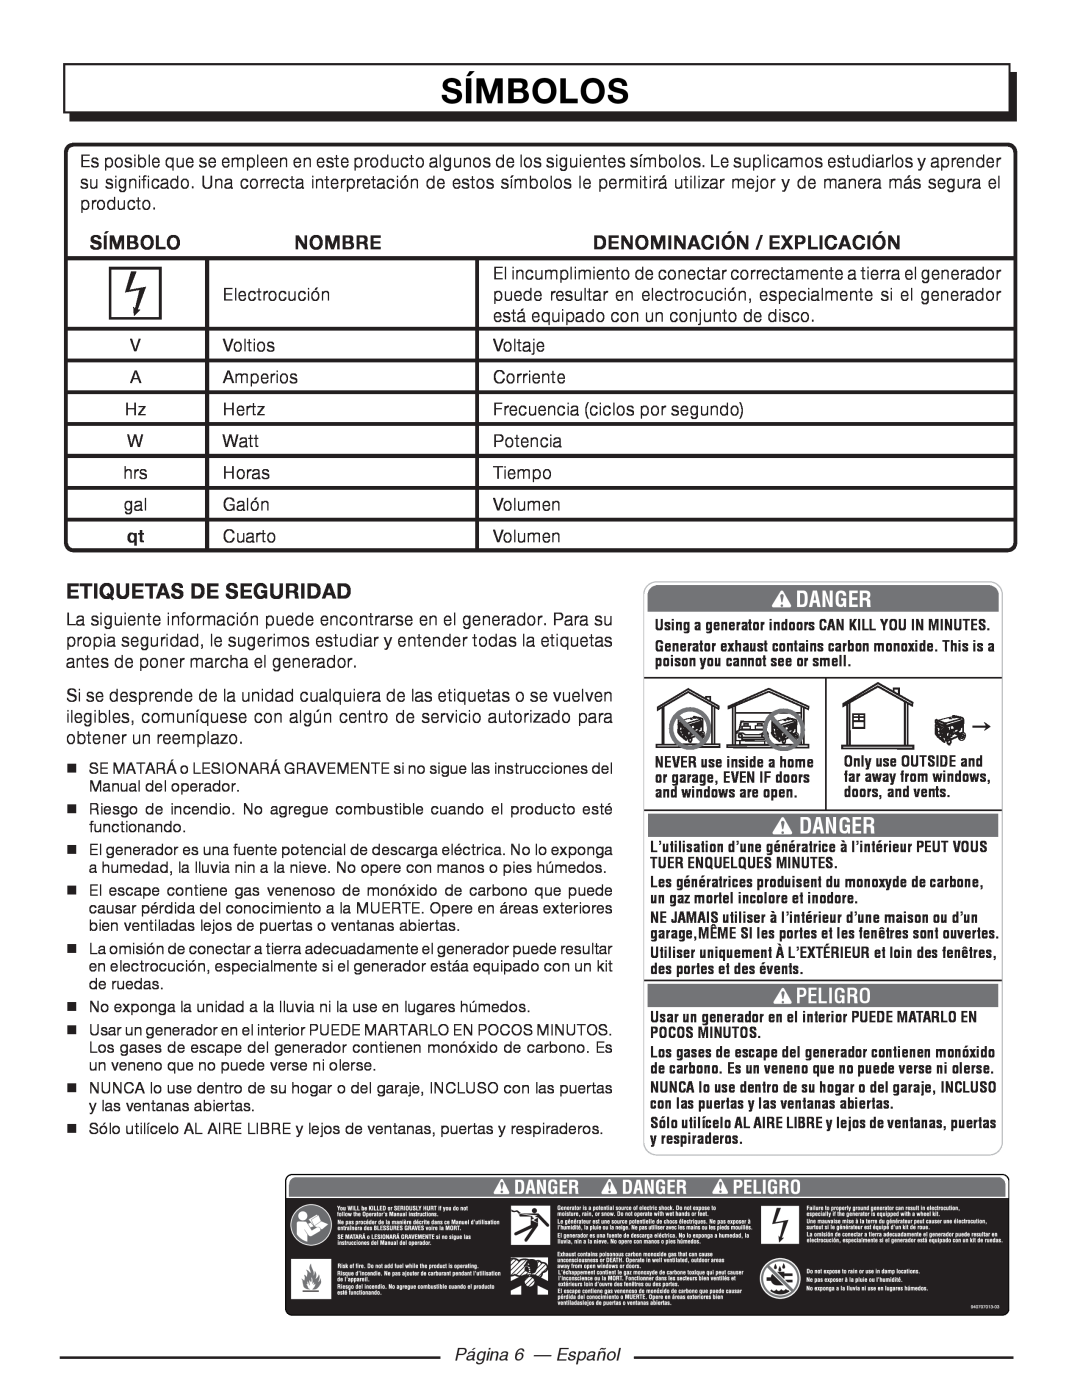 Homelite HGCA5000 Etiquetas De Seguridad, Página 6 - Español, Símbolos, Danger, Nombre, Denominación / Explicación 